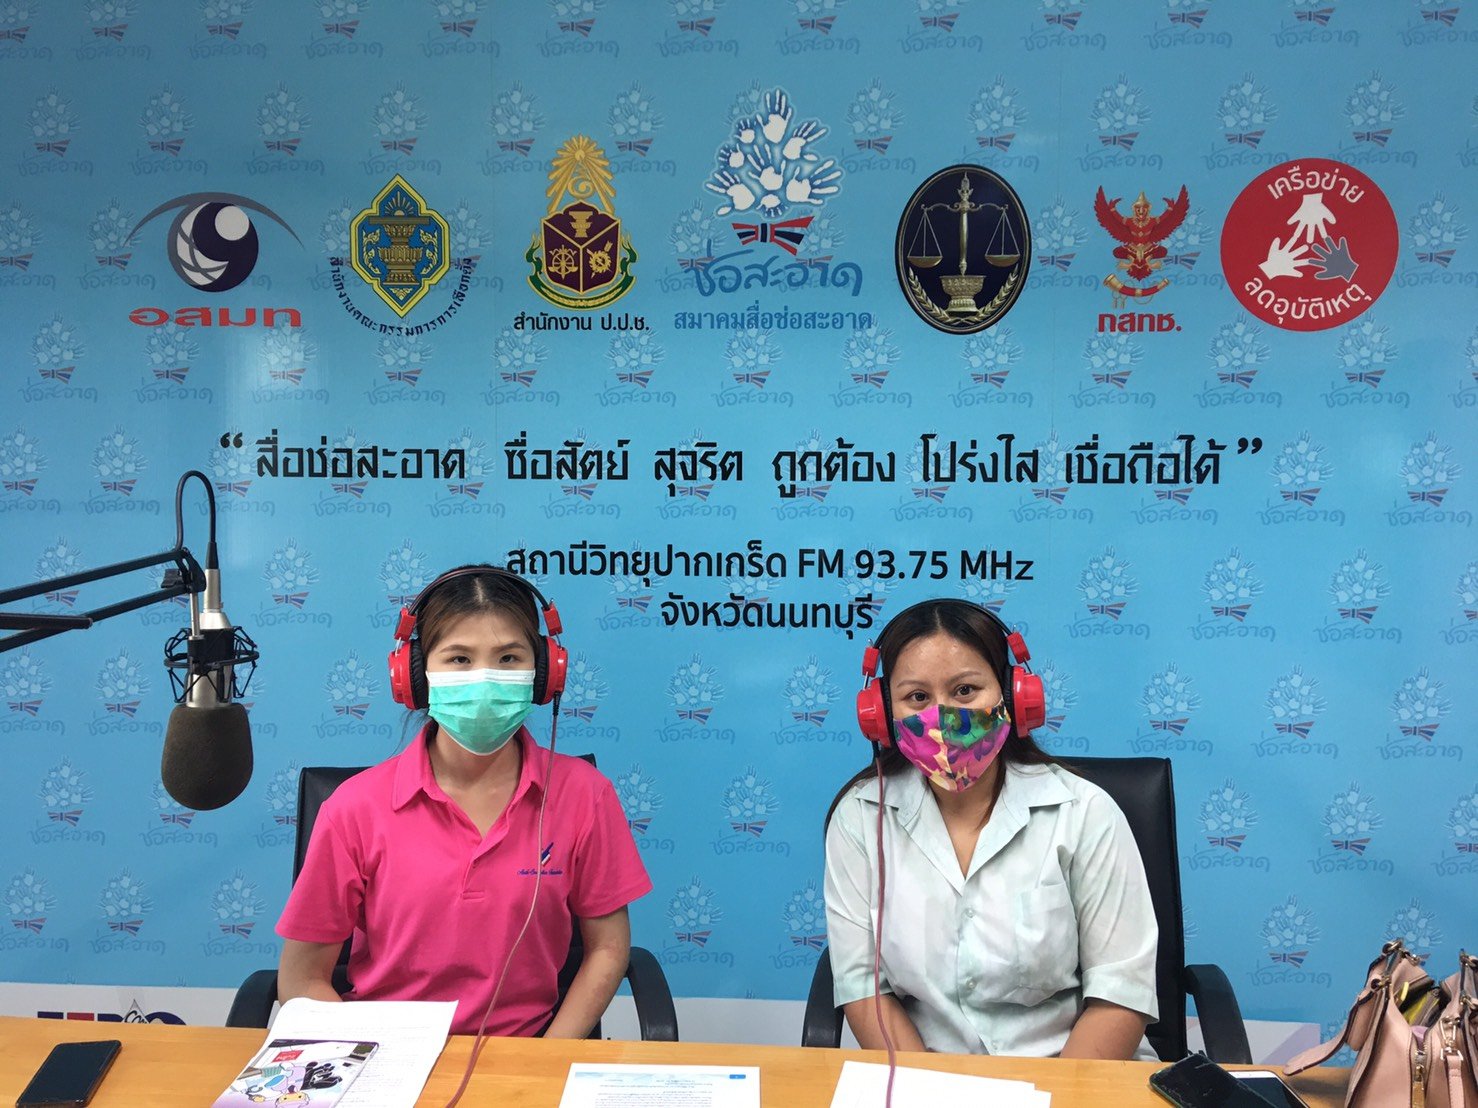 รายการ “คนไทยไม่ทนต่อการทุจริต” วันเสาร์ที่ 18 กันยายน 2564 เวลา 18.00-18.30 น.